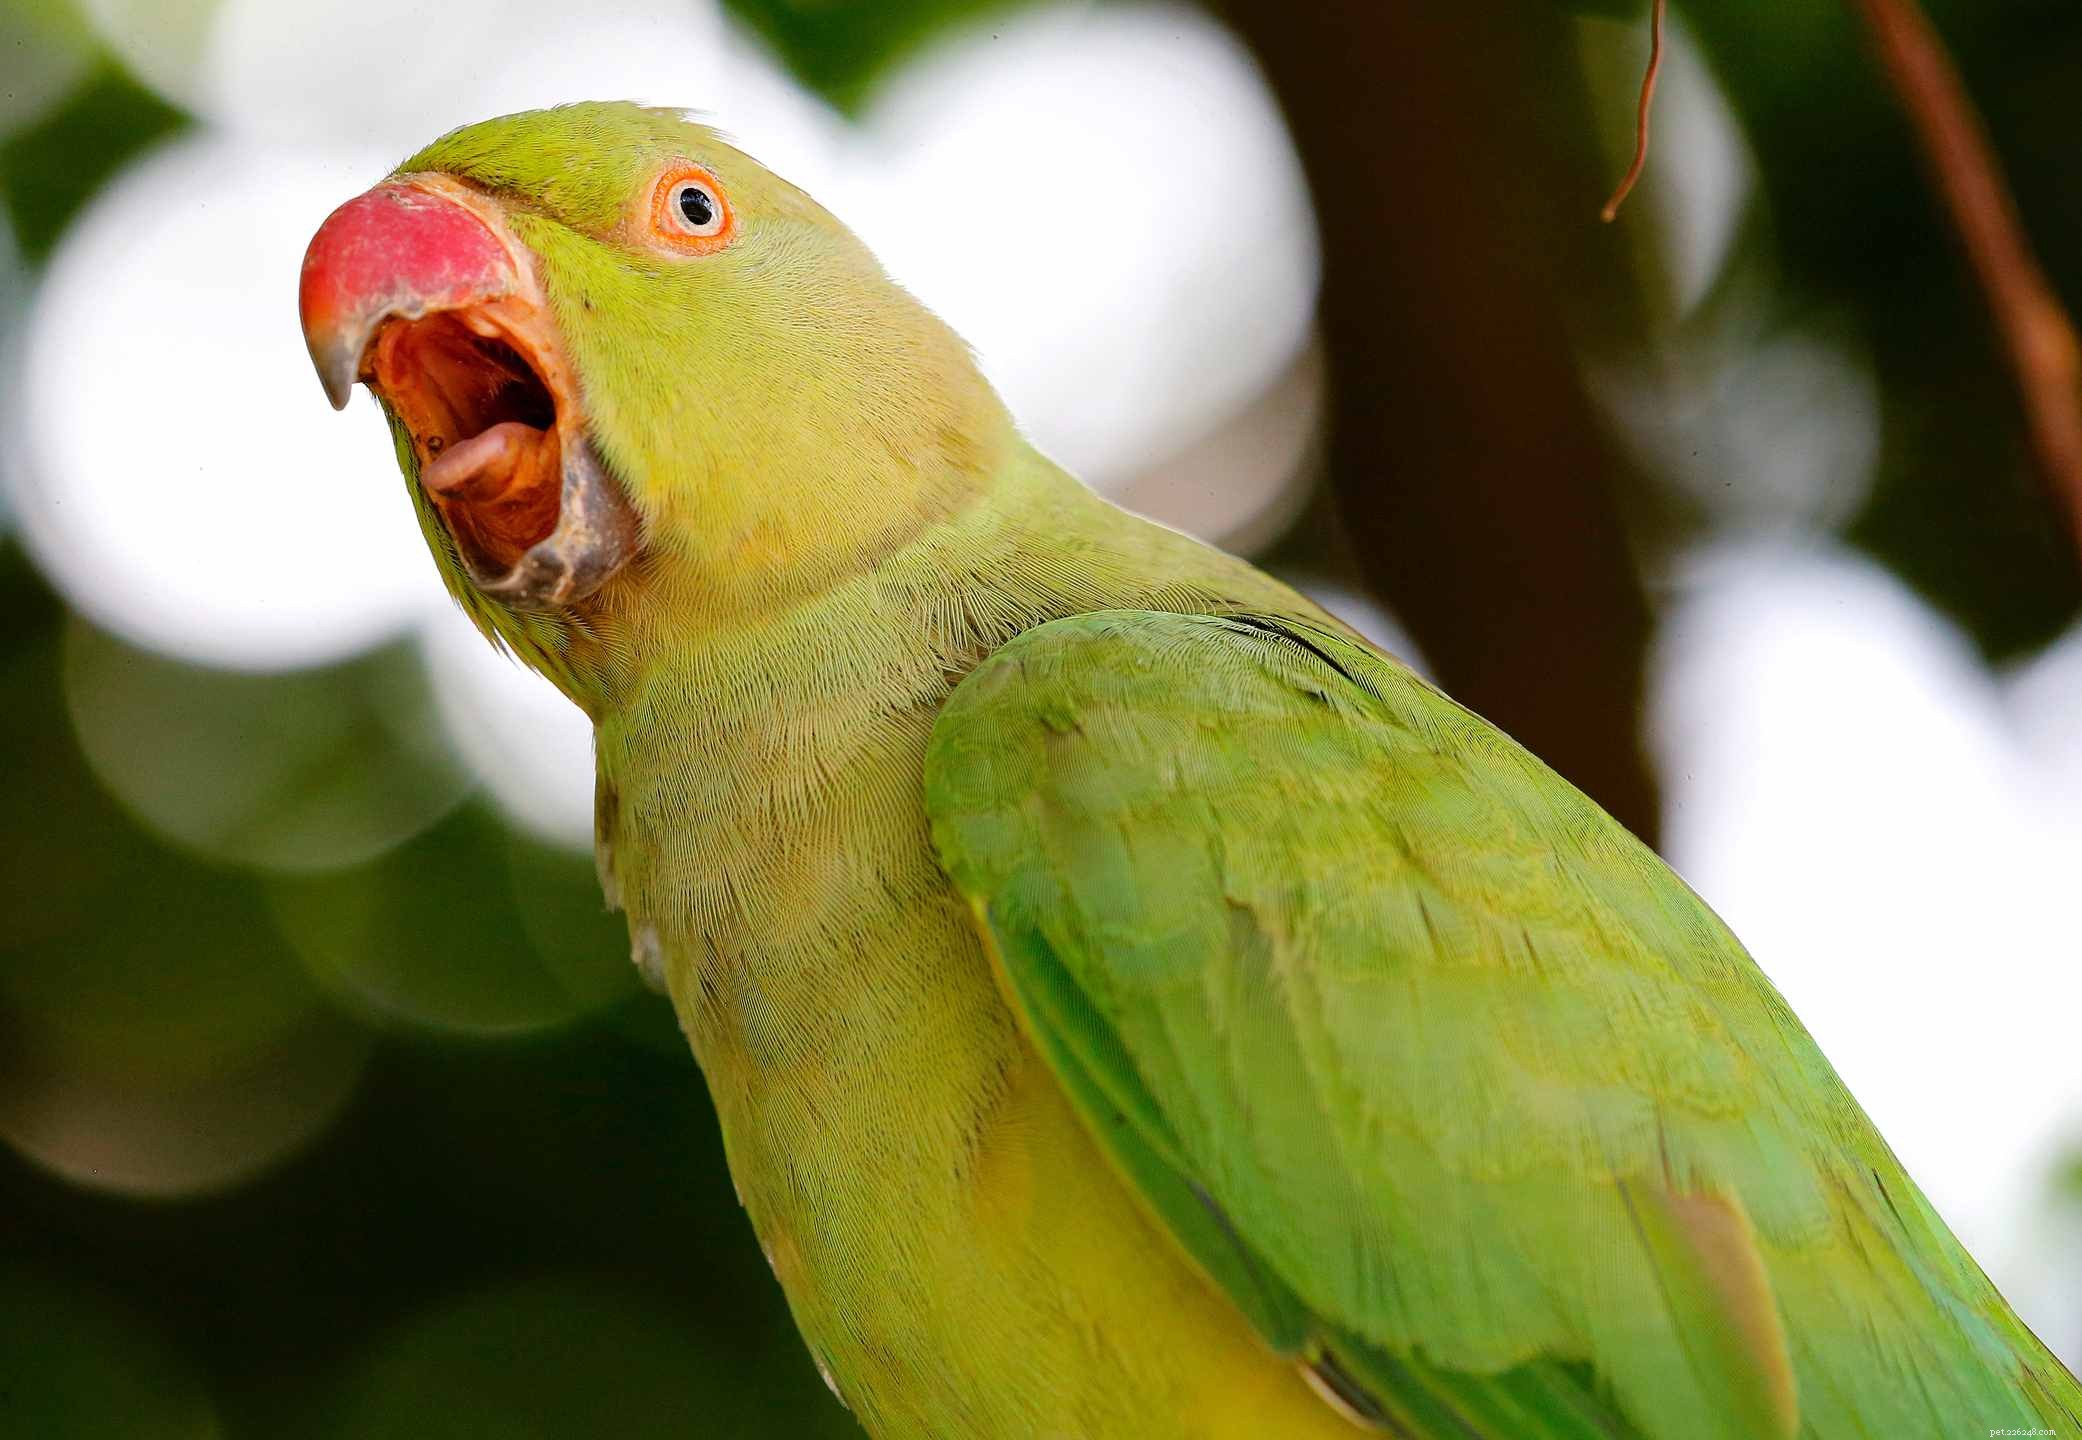 앵무새가 노래하도록 훈련시키는 방법